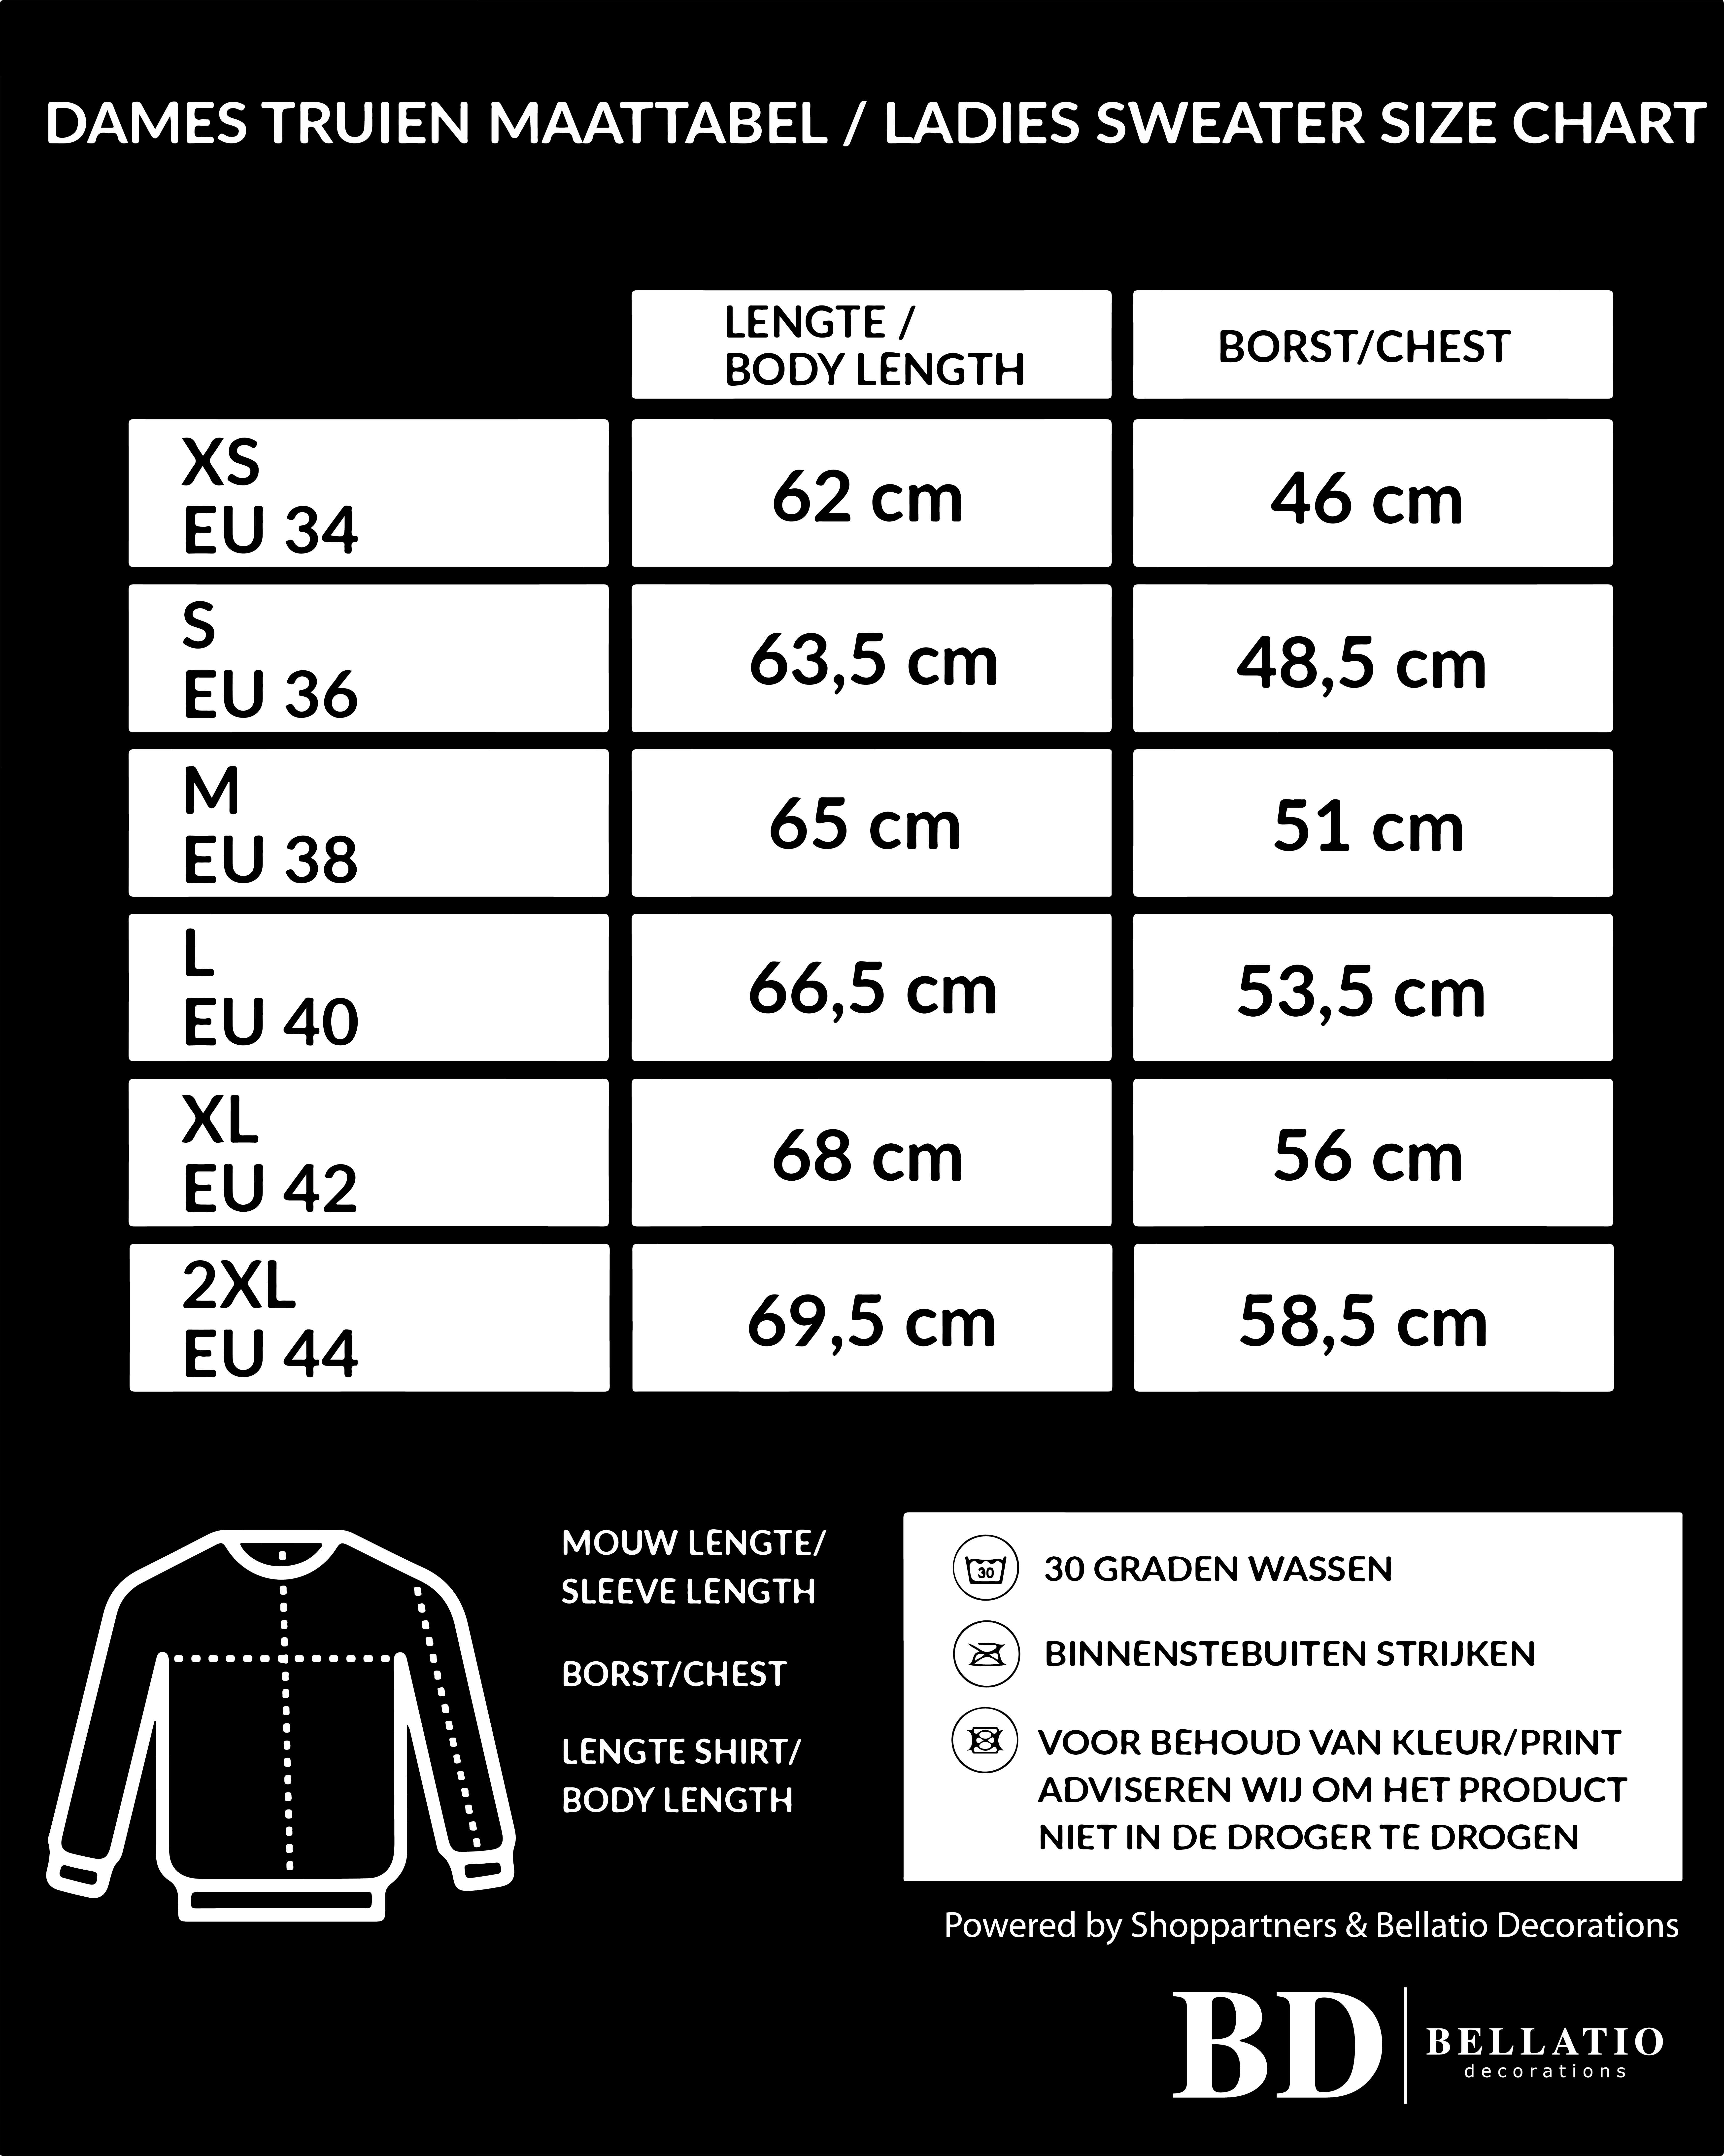 I love Belgie sweater / trui zwart voor dames